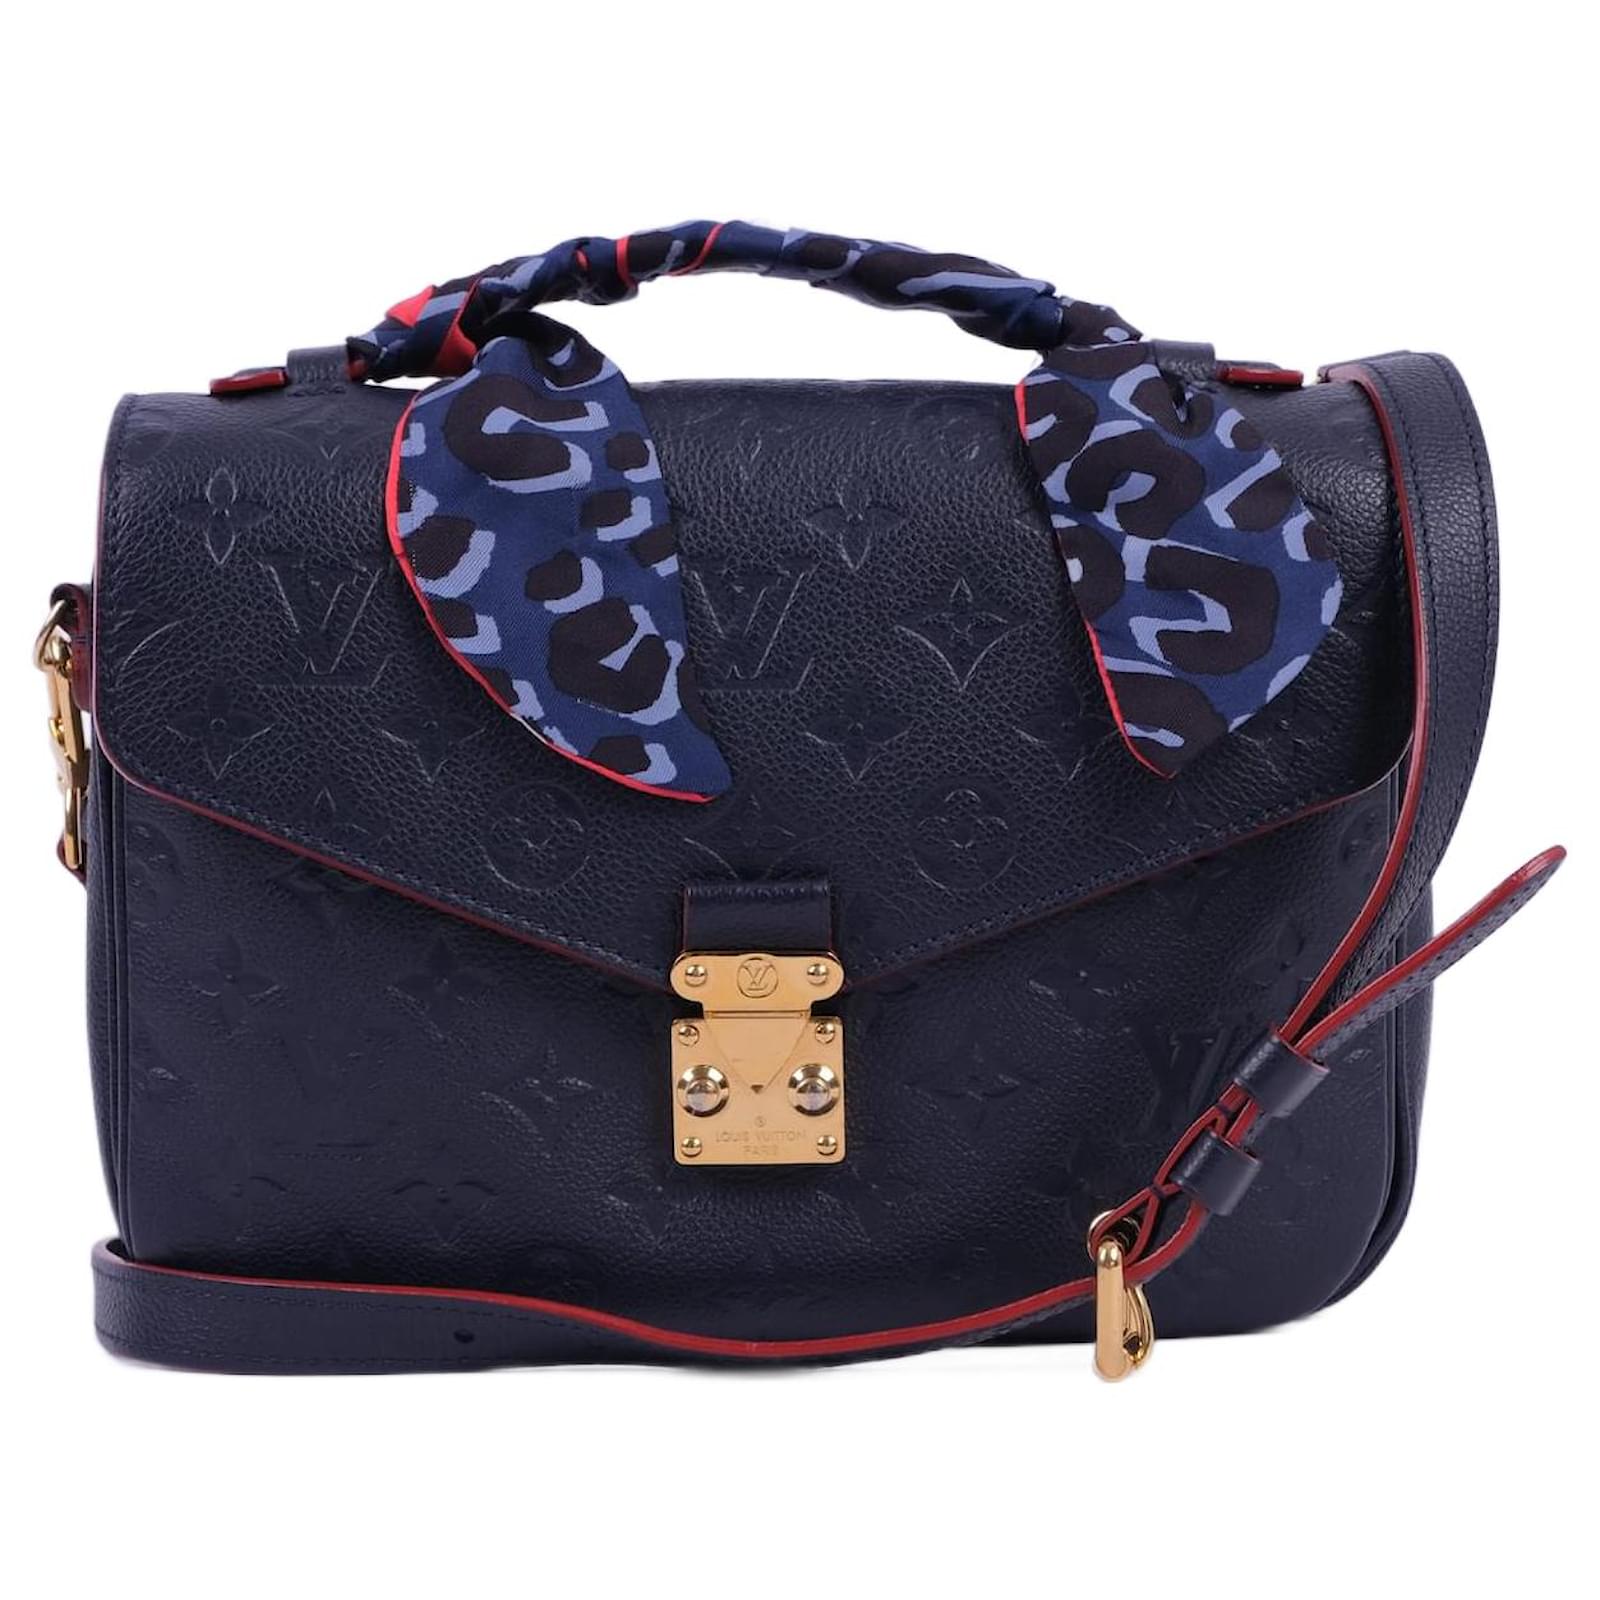 Handbags Louis Vuitton Louis Vuitton Handbags Leather